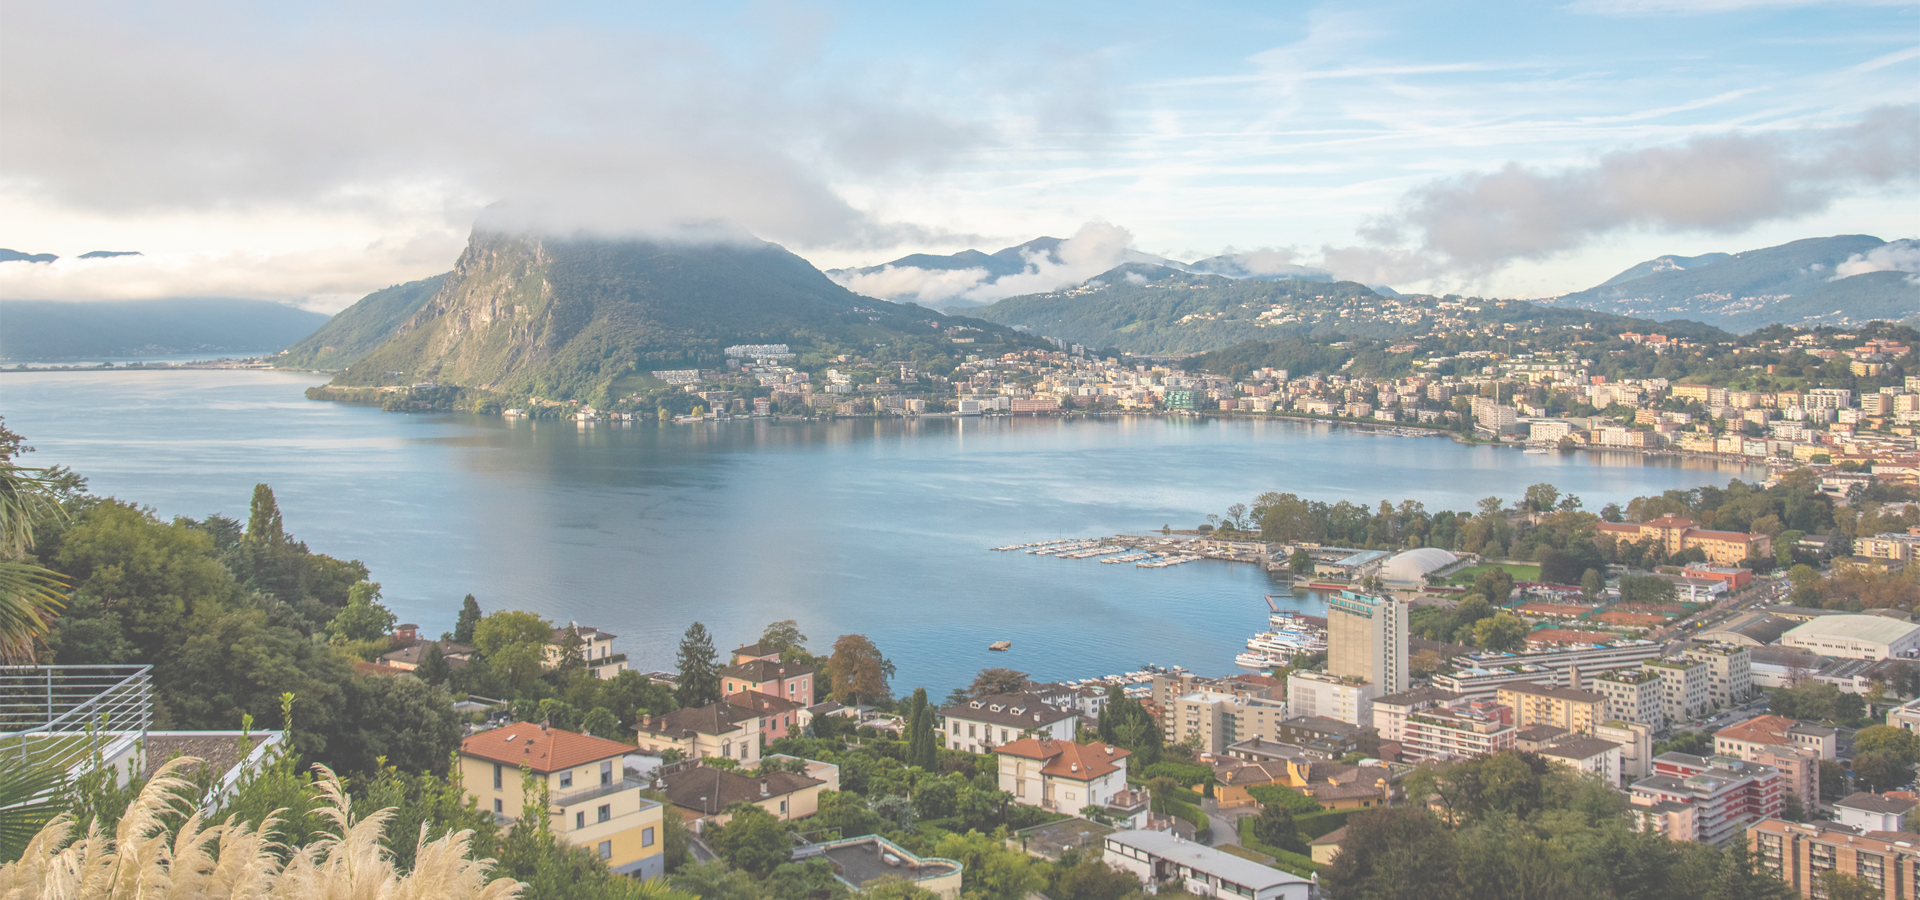 <b>Lugano, Canton of Ticino, Switzerland</b>